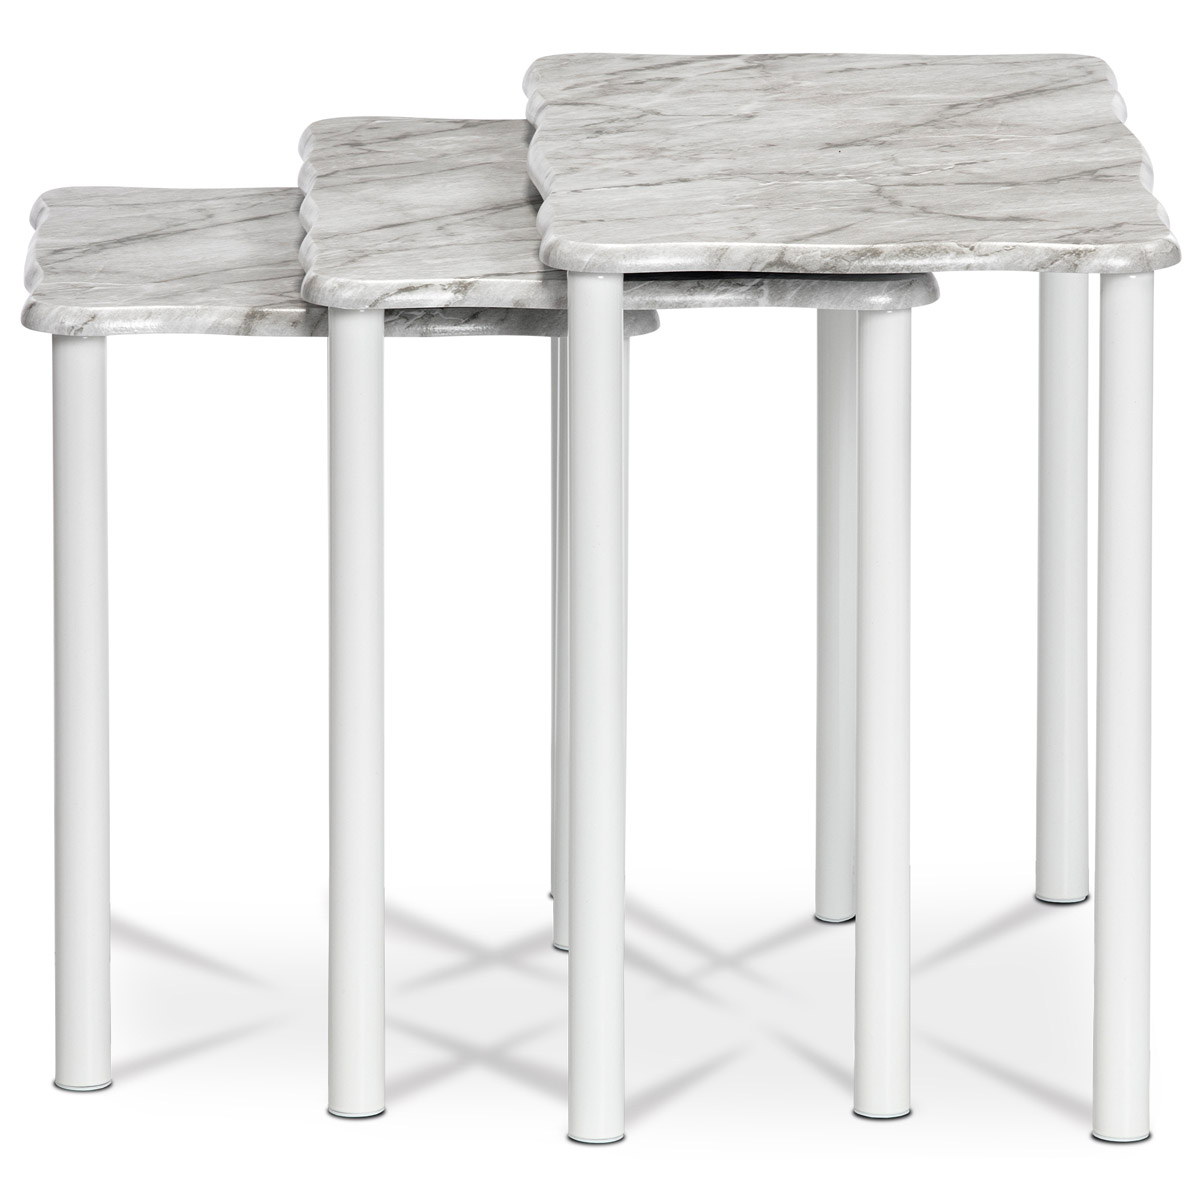 Přístavné a odkládací stolky, set 3 ks, deska šedobílý mramor, kovové nohy, bílý